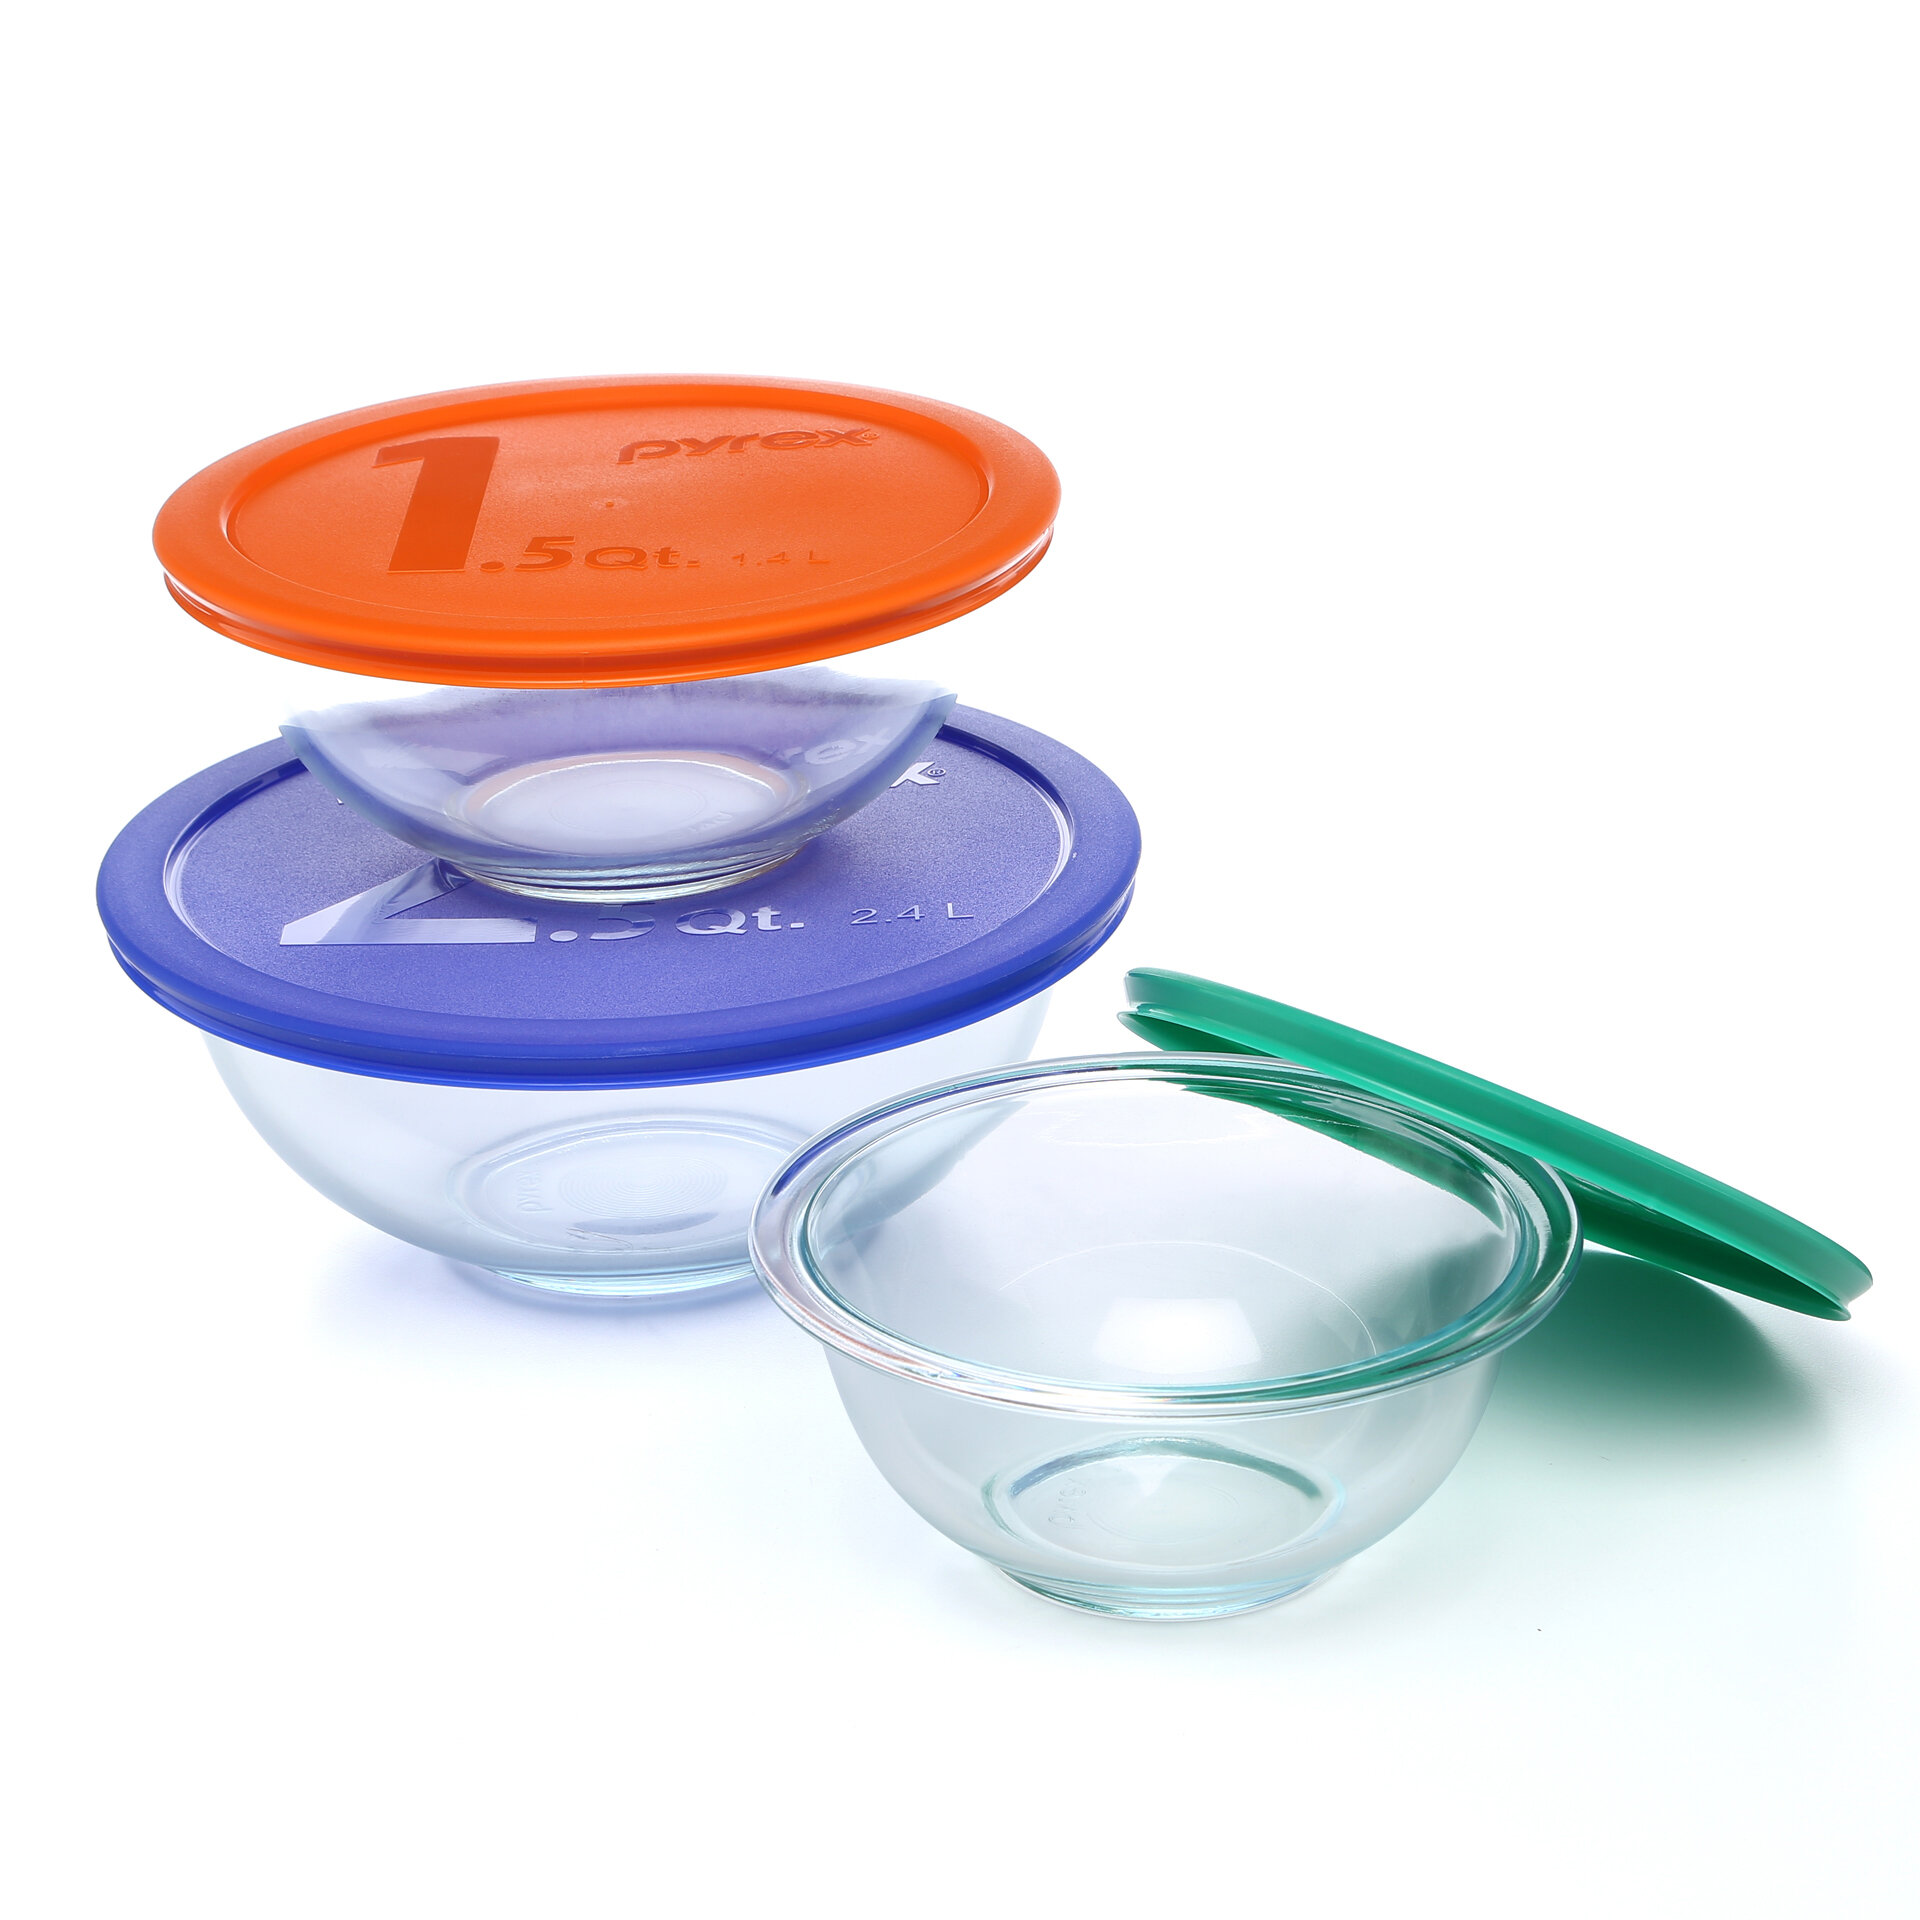 https://assets.wfcdn.com/im/86341592/compr-r85/9018/9018721/pyrex-smart-essentials-6-piece-glass-mixing-bowl-set-with-lid.jpg